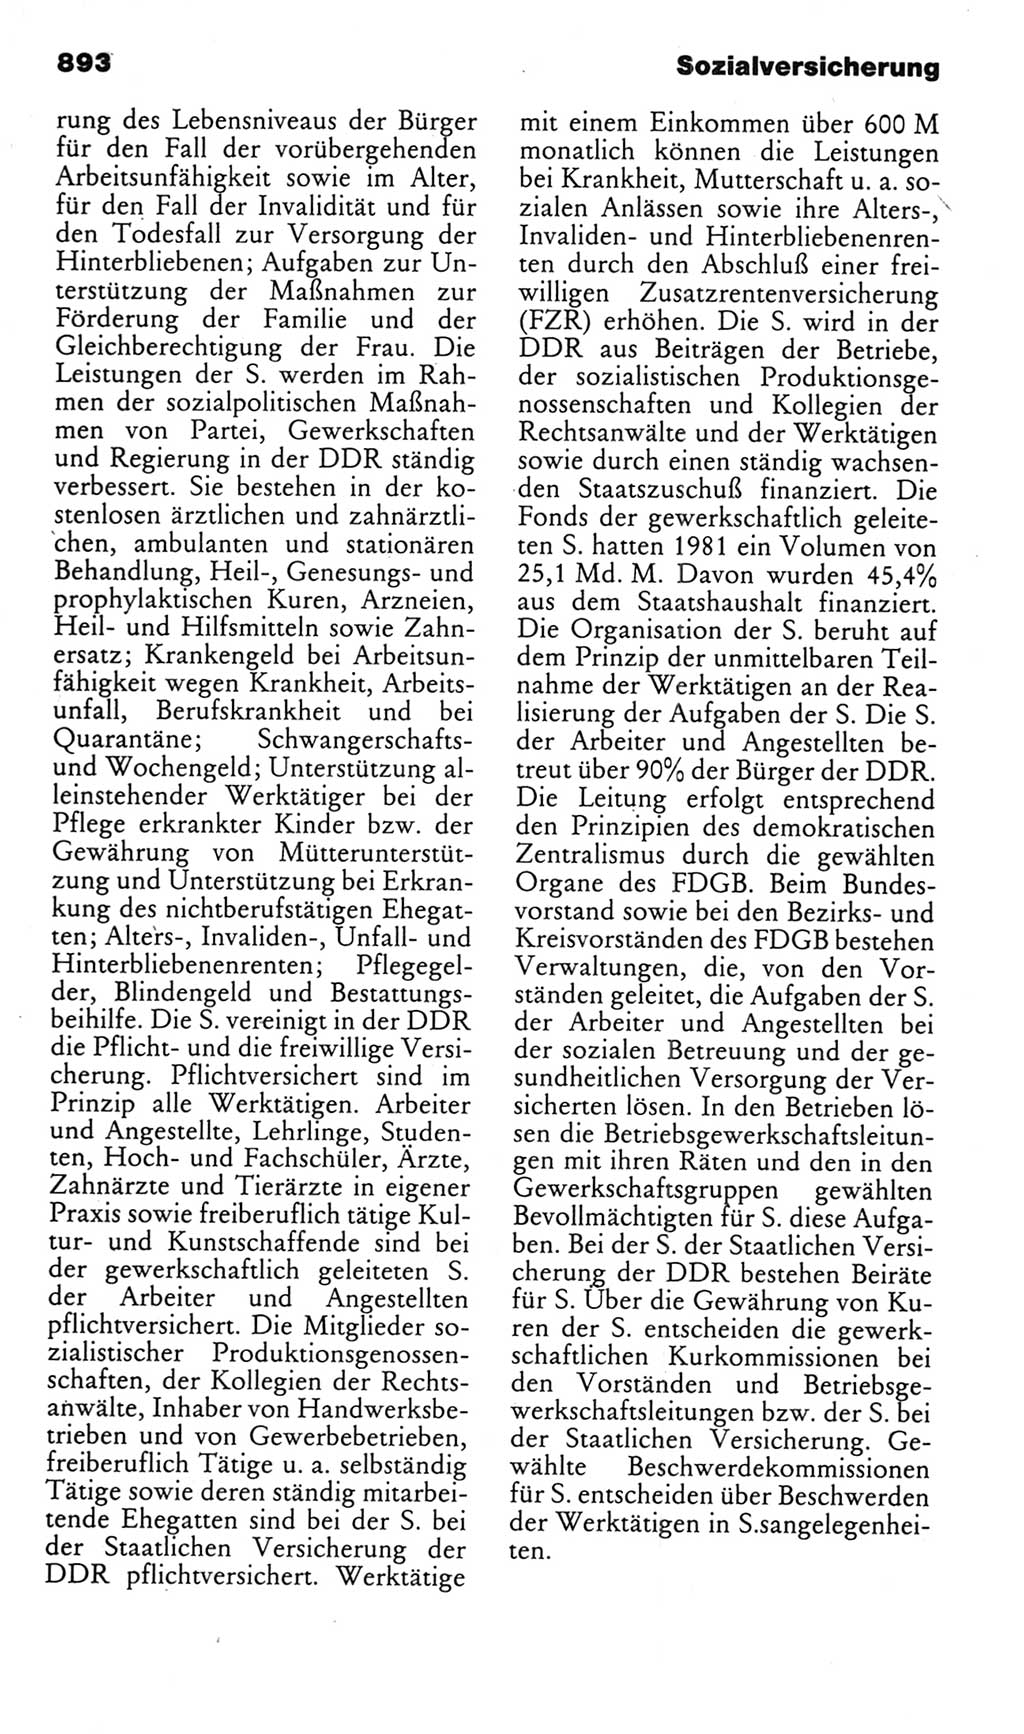 Kleines politisches Wörterbuch [Deutsche Demokratische Republik (DDR)] 1985, Seite 893 (Kl. pol. Wb. DDR 1985, S. 893)